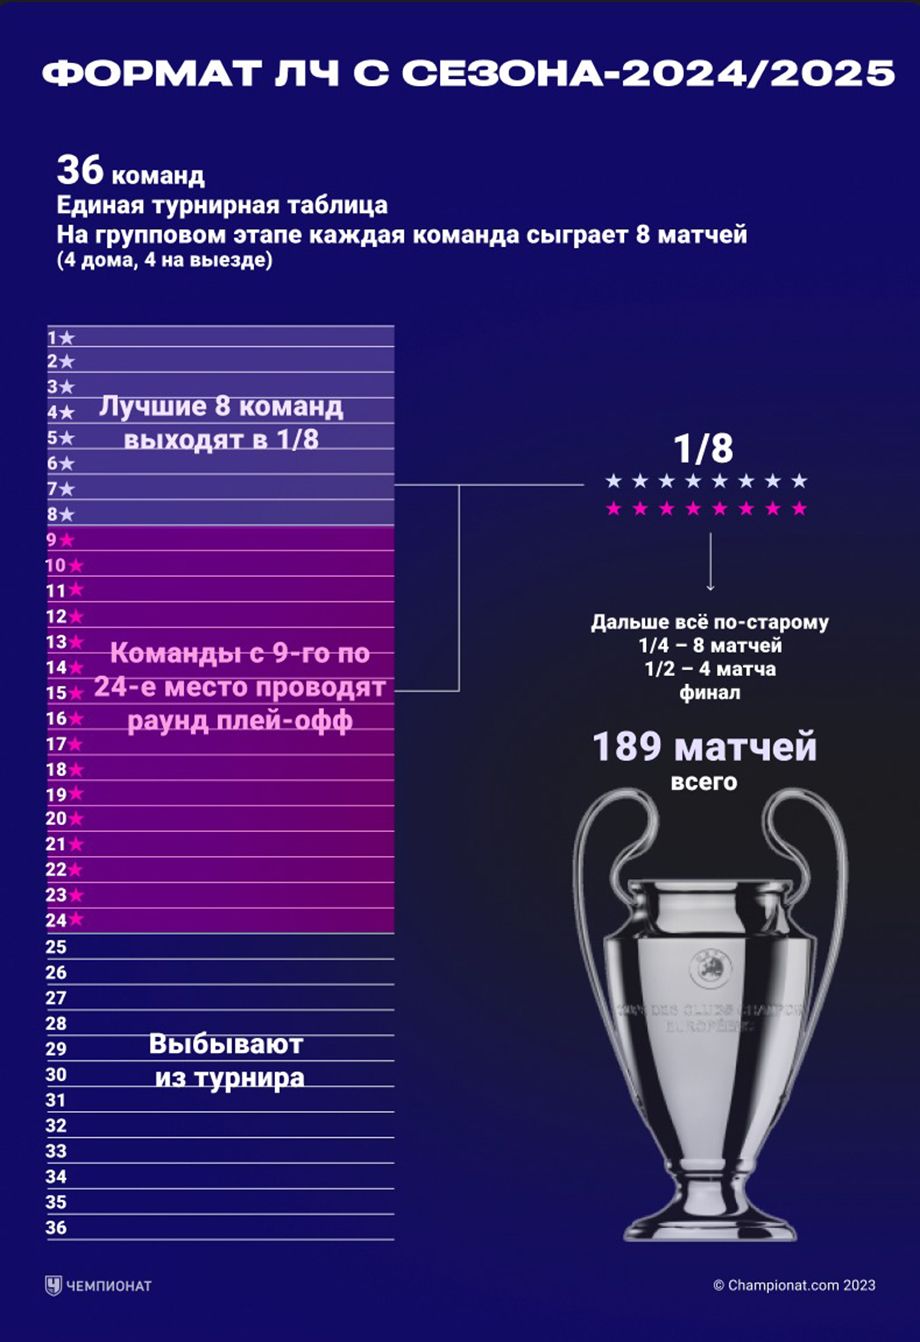 Formato de la Liga de Campeones a partir de la temporada 2024/2025